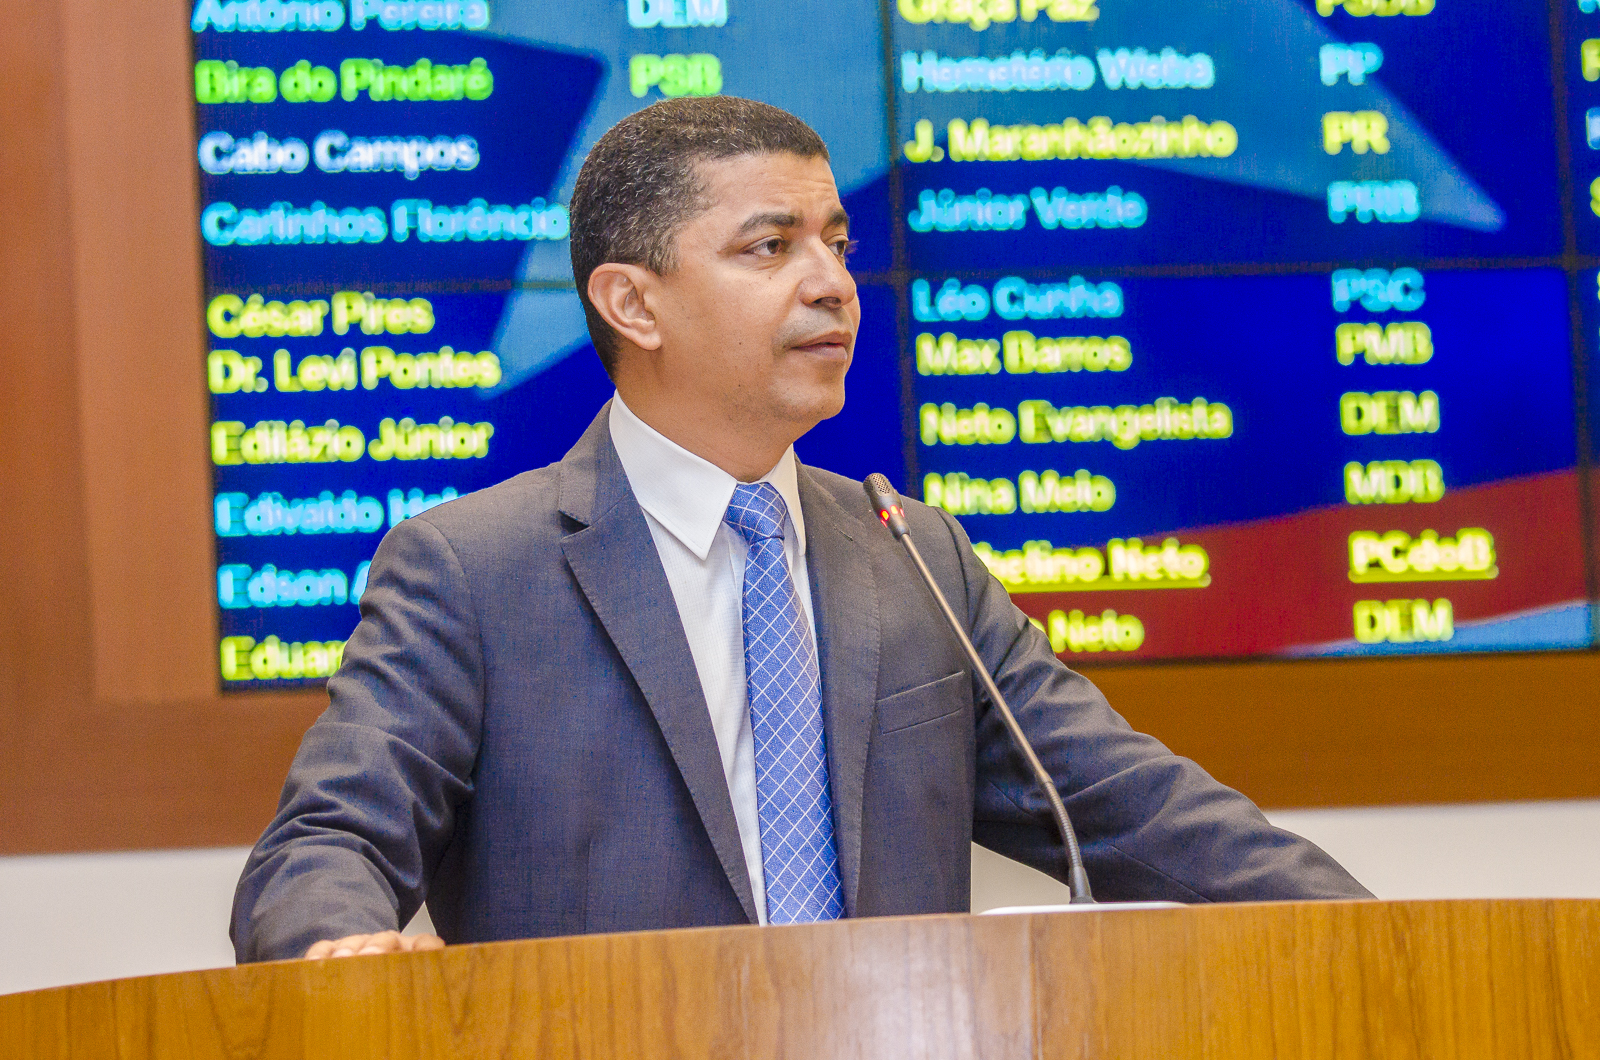 Bira destaca ranking que aponta Flávio Dino como o governador mais eficiente do Brasil  